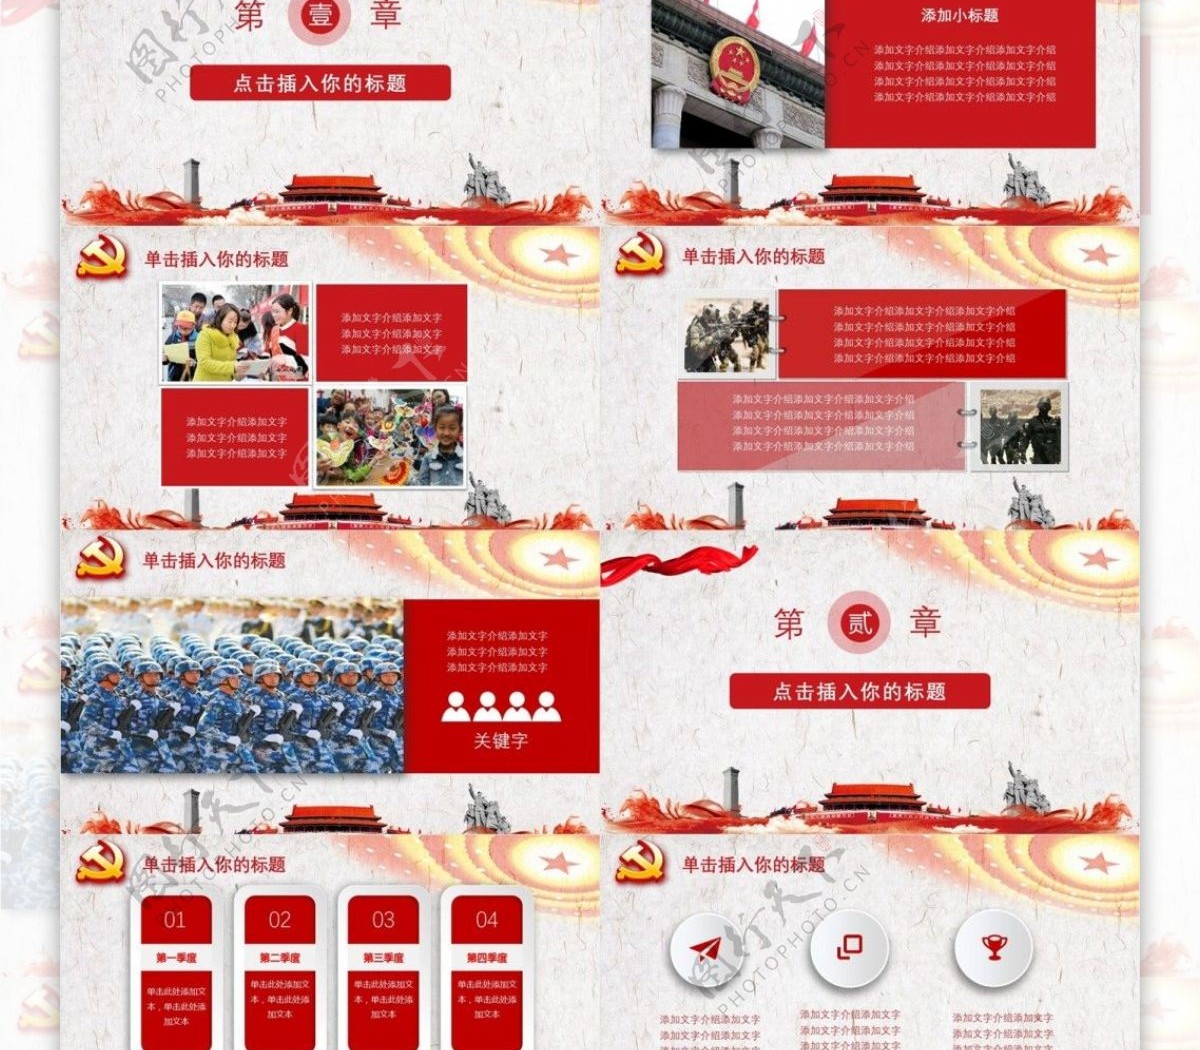 庆祝十九大胜利召开中国梦红色党员PPT模板